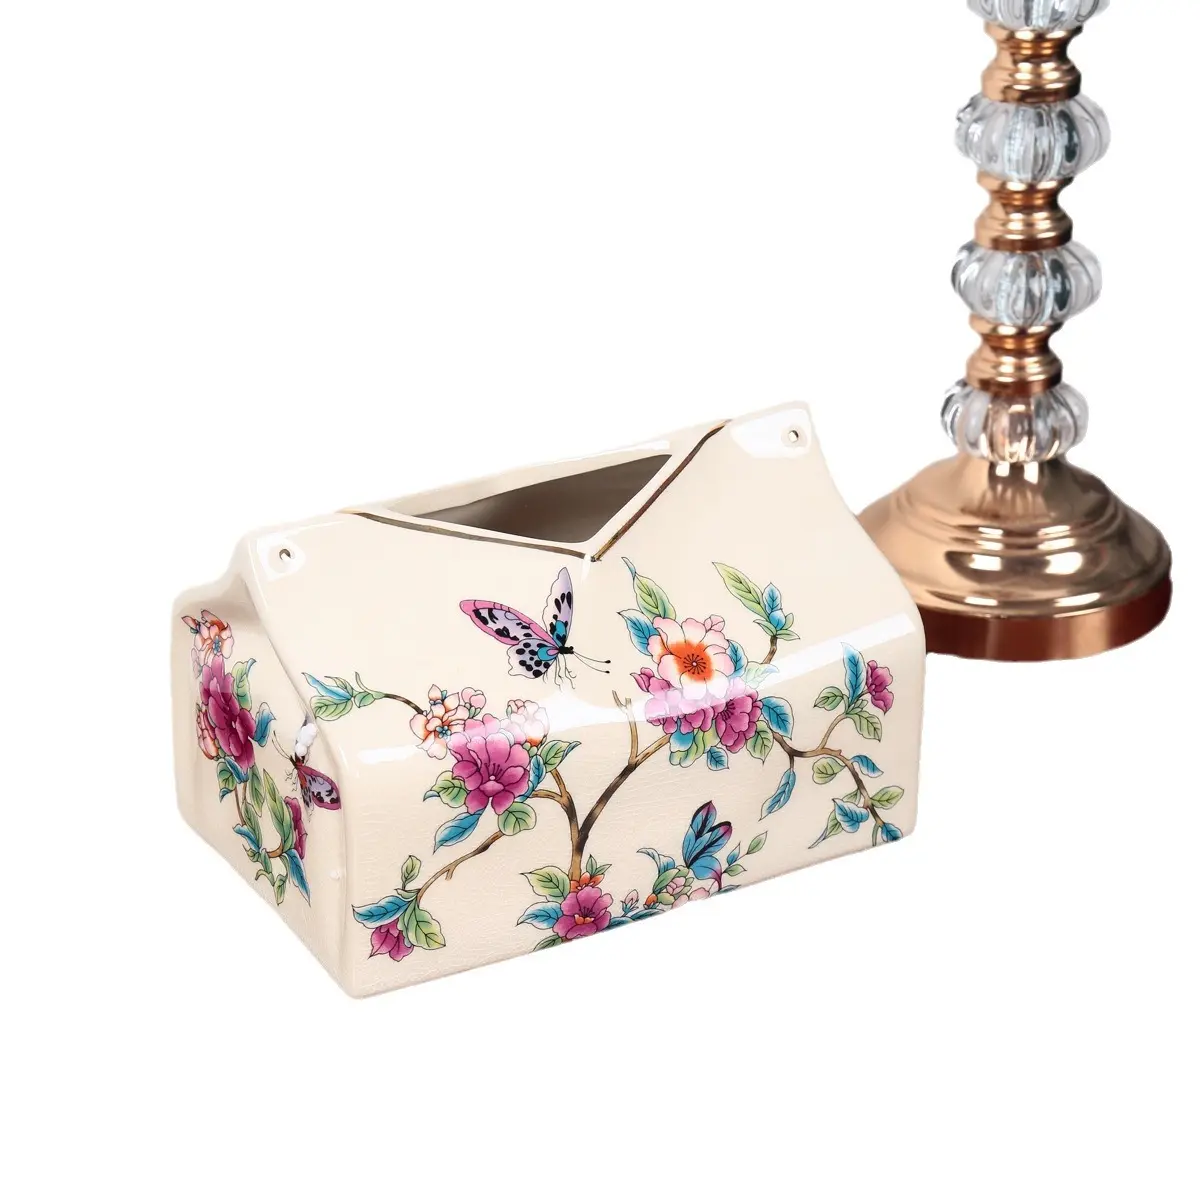 Caja de pañuelos para sala de estar Vintage americana, decoración creativa para el hogar, mesa de té, caja de papel de cerámica, caja de papel europea, esmalte de cerámica